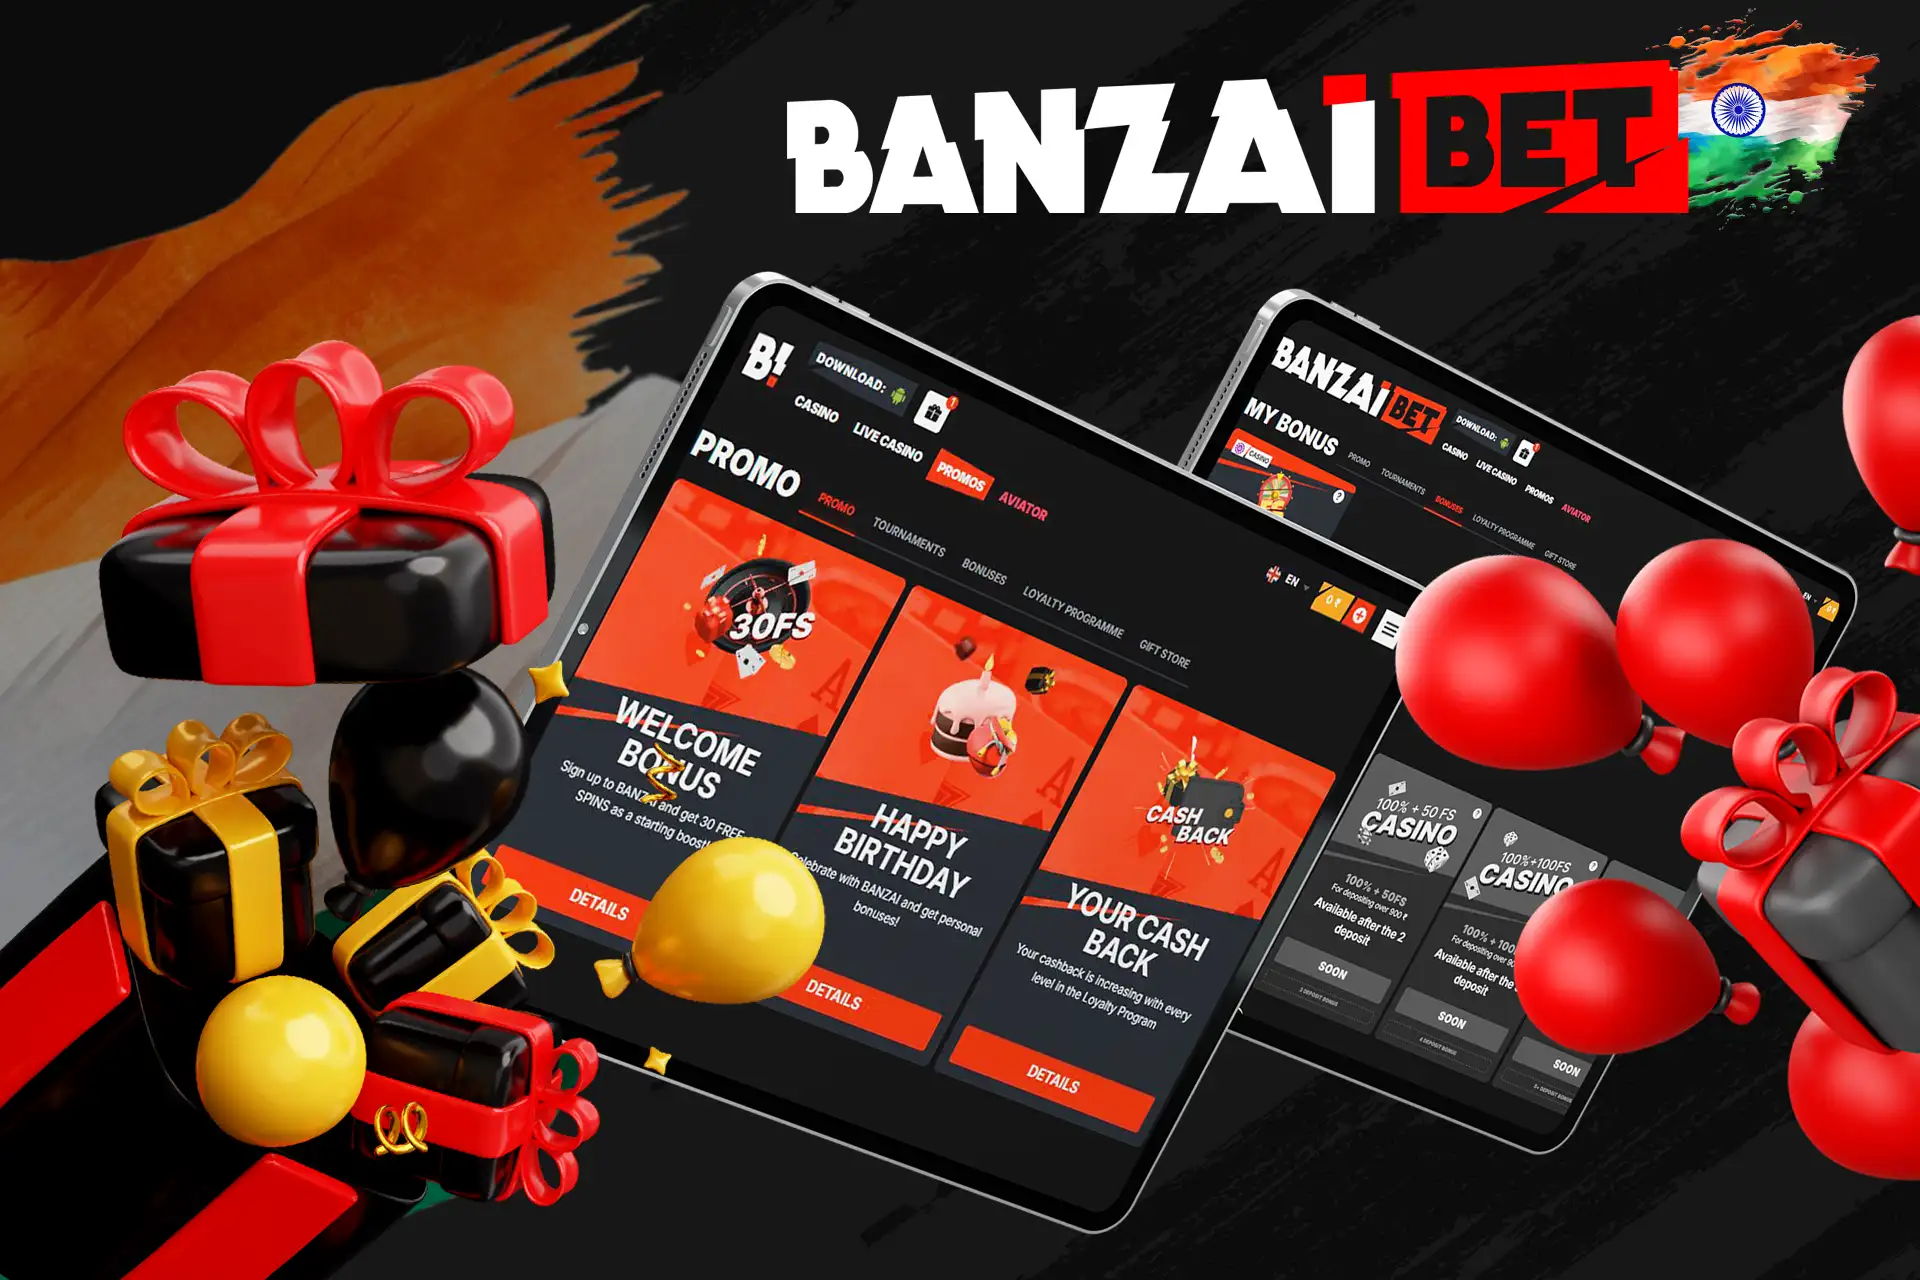 Check out Banzaibet India Bonus Program